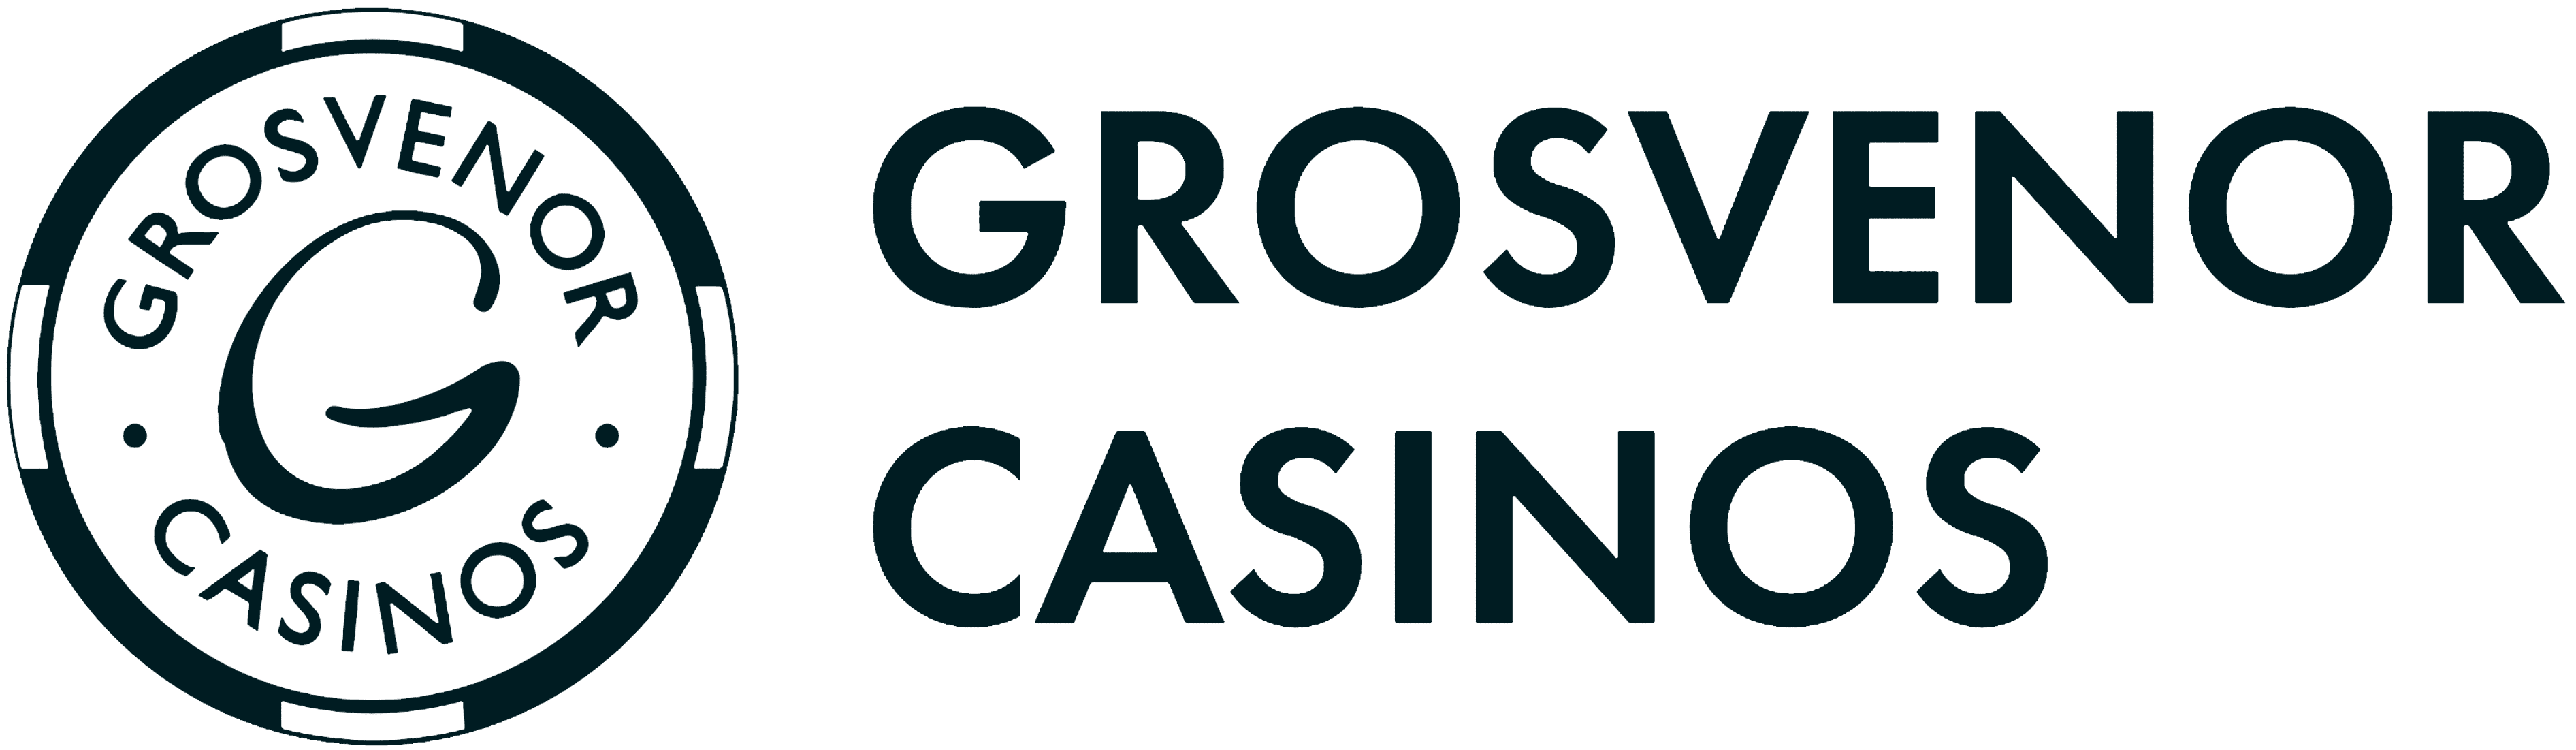 Логотип Grosvenor Casinos